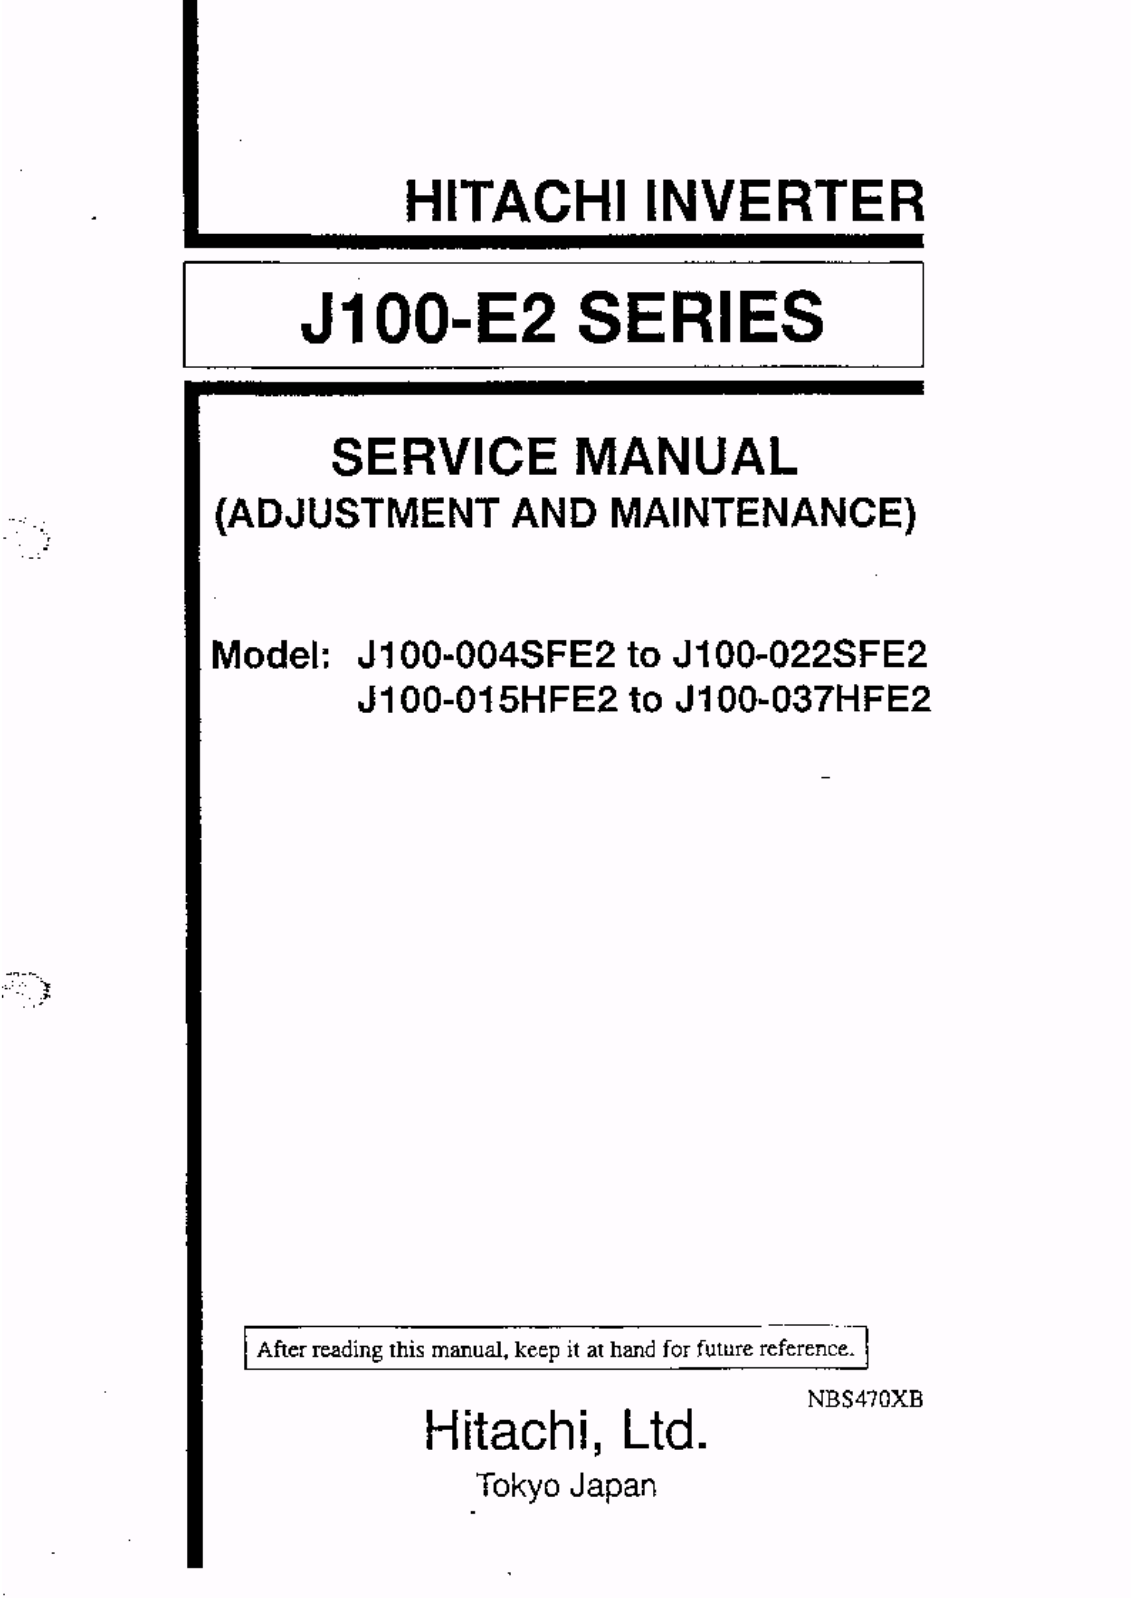 HITACHI J100-004SFE2, J100-022SFE2, J100-015HFE2, J100-037HFE2 User Manual